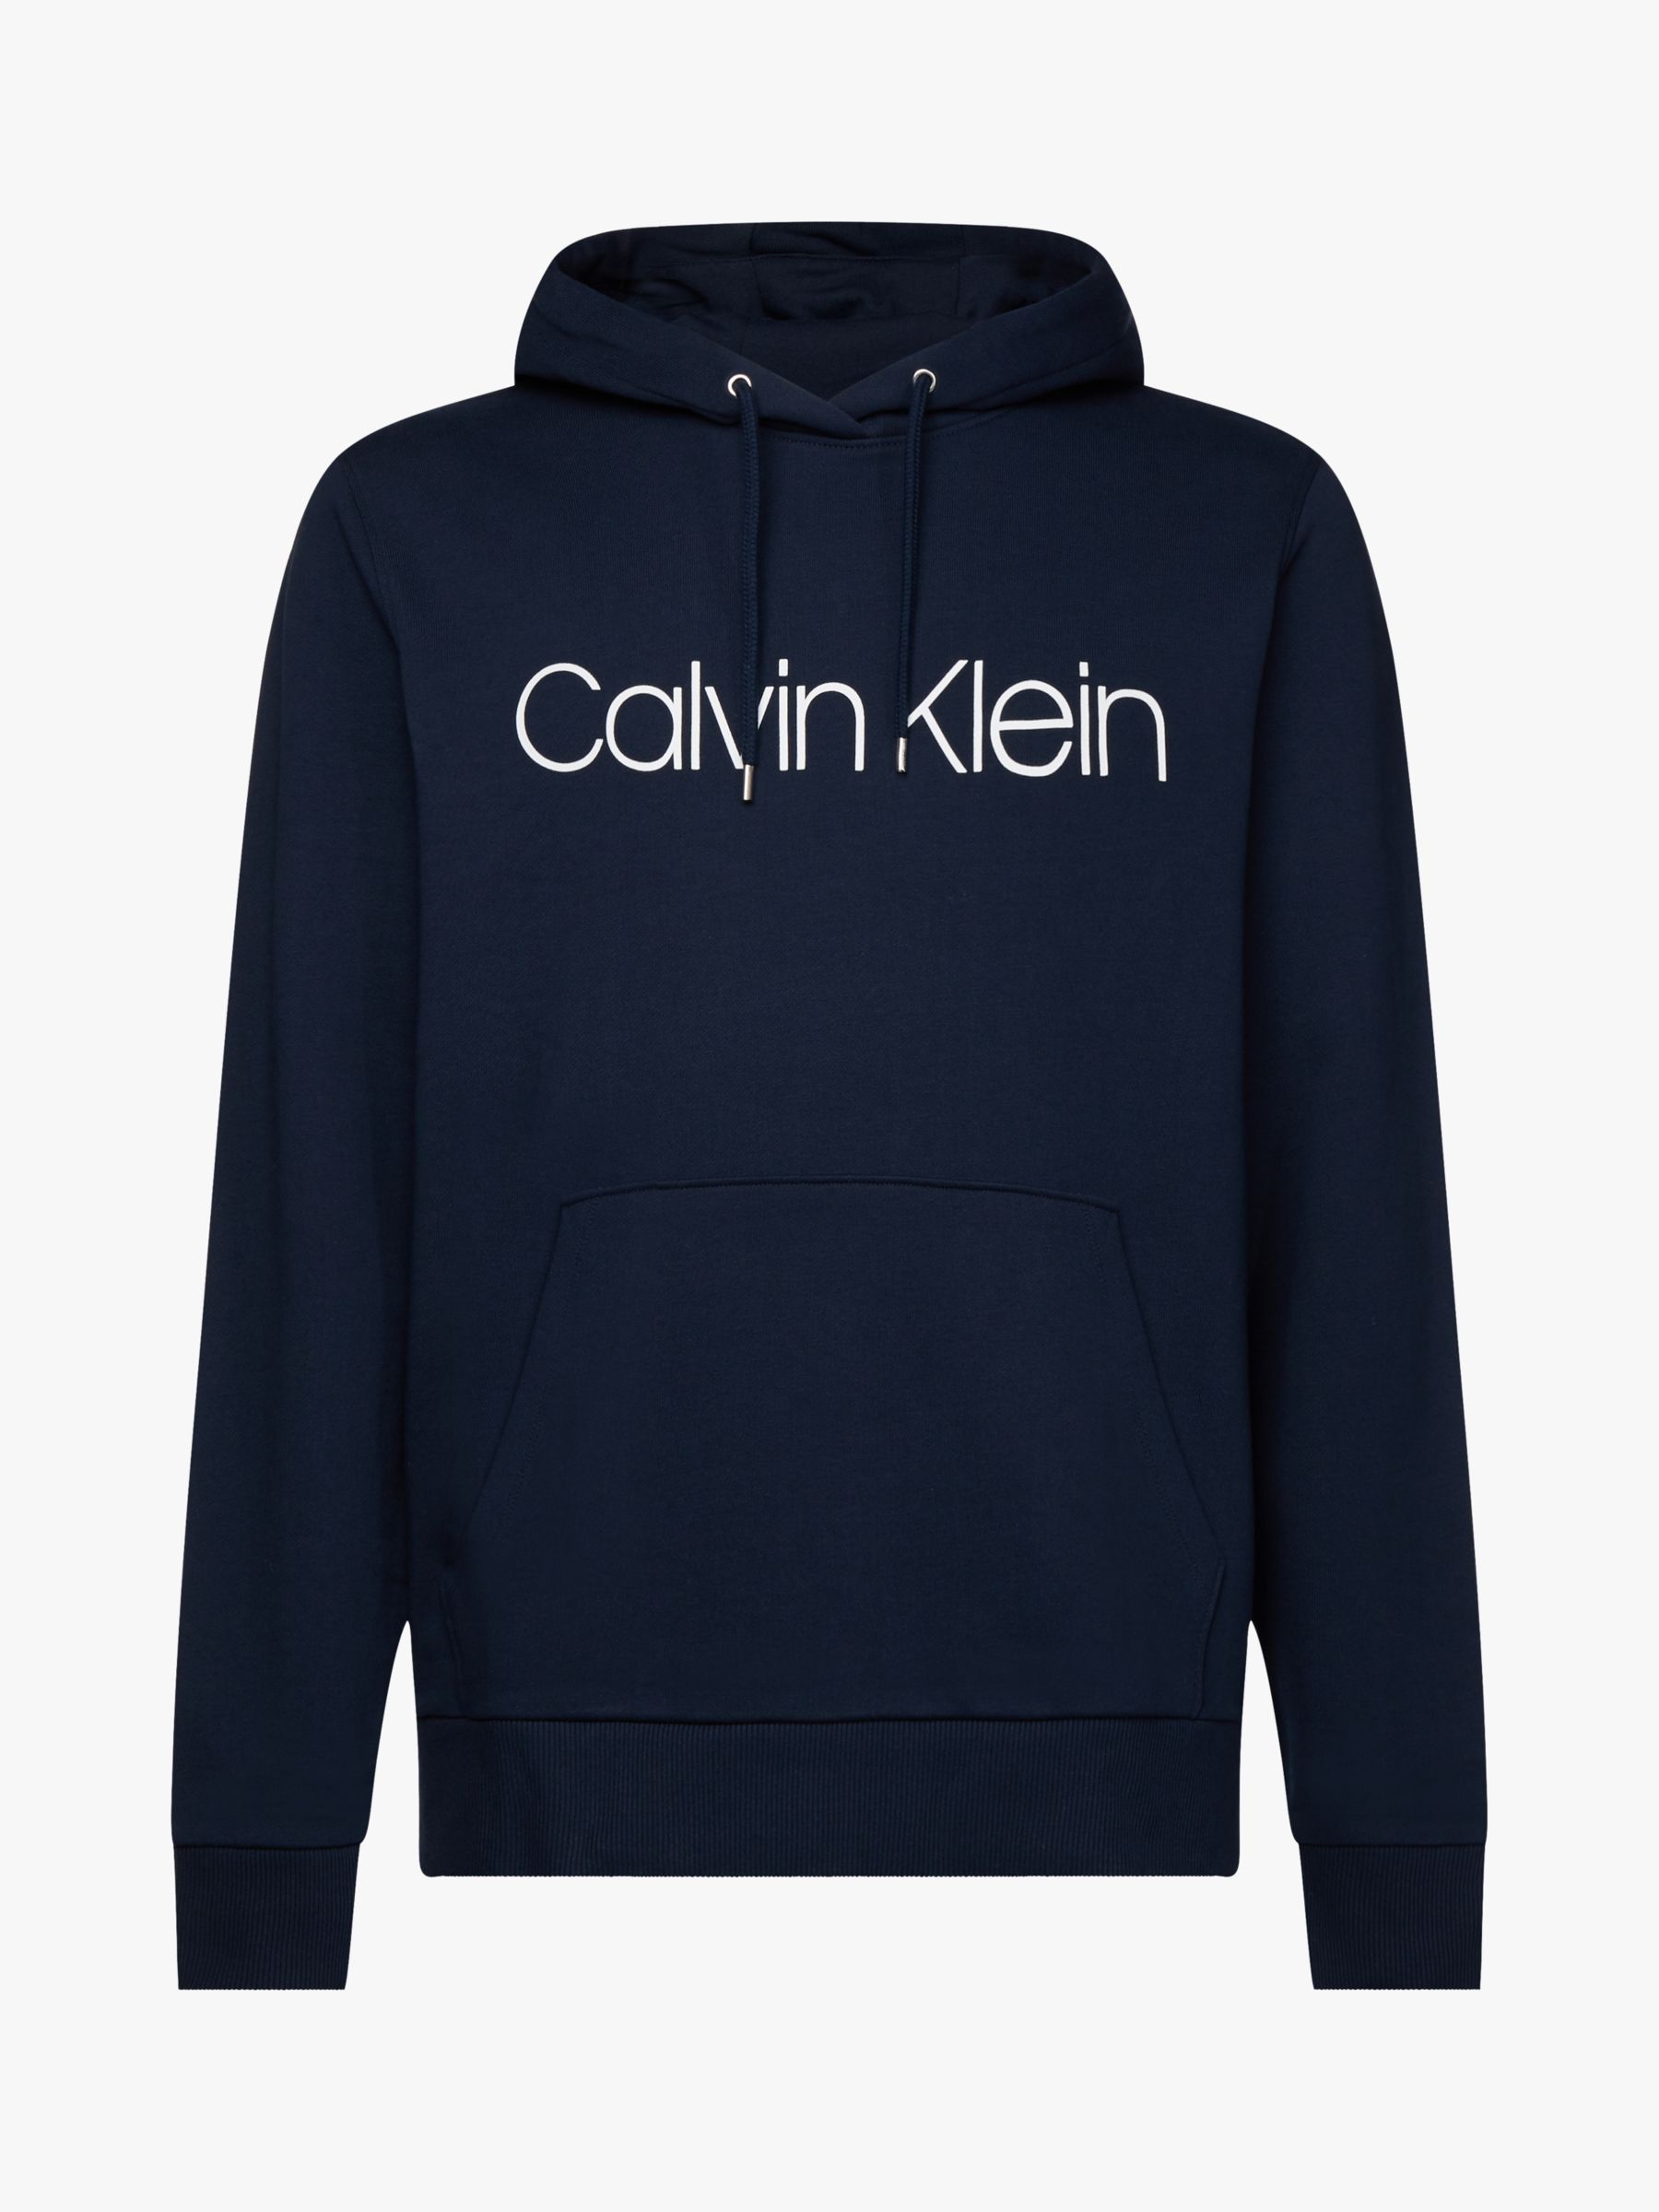 Calvin Klein Organic Cotton Logo Hoodie, Navy at John Lewis & Partners